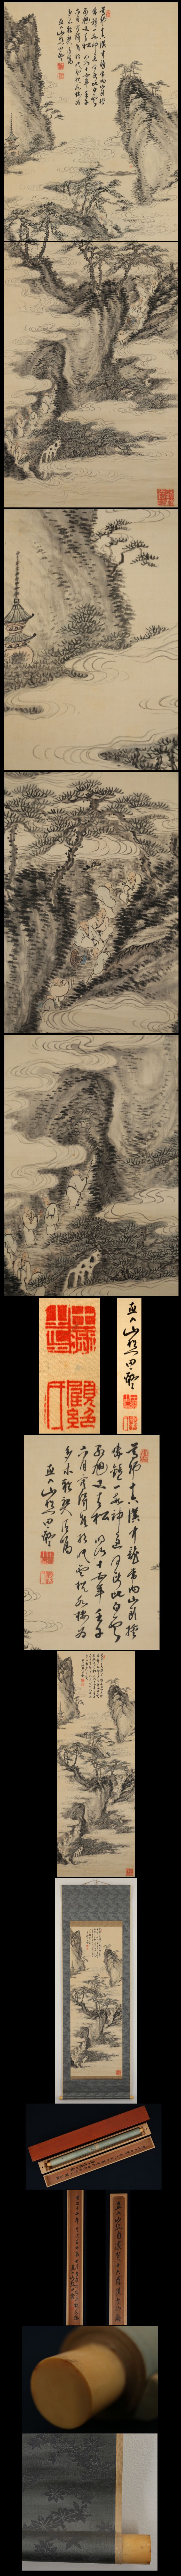 田能村直入 十六羅漢登山図 | 古美術品・中国書画の買取・査定や掛軸の 